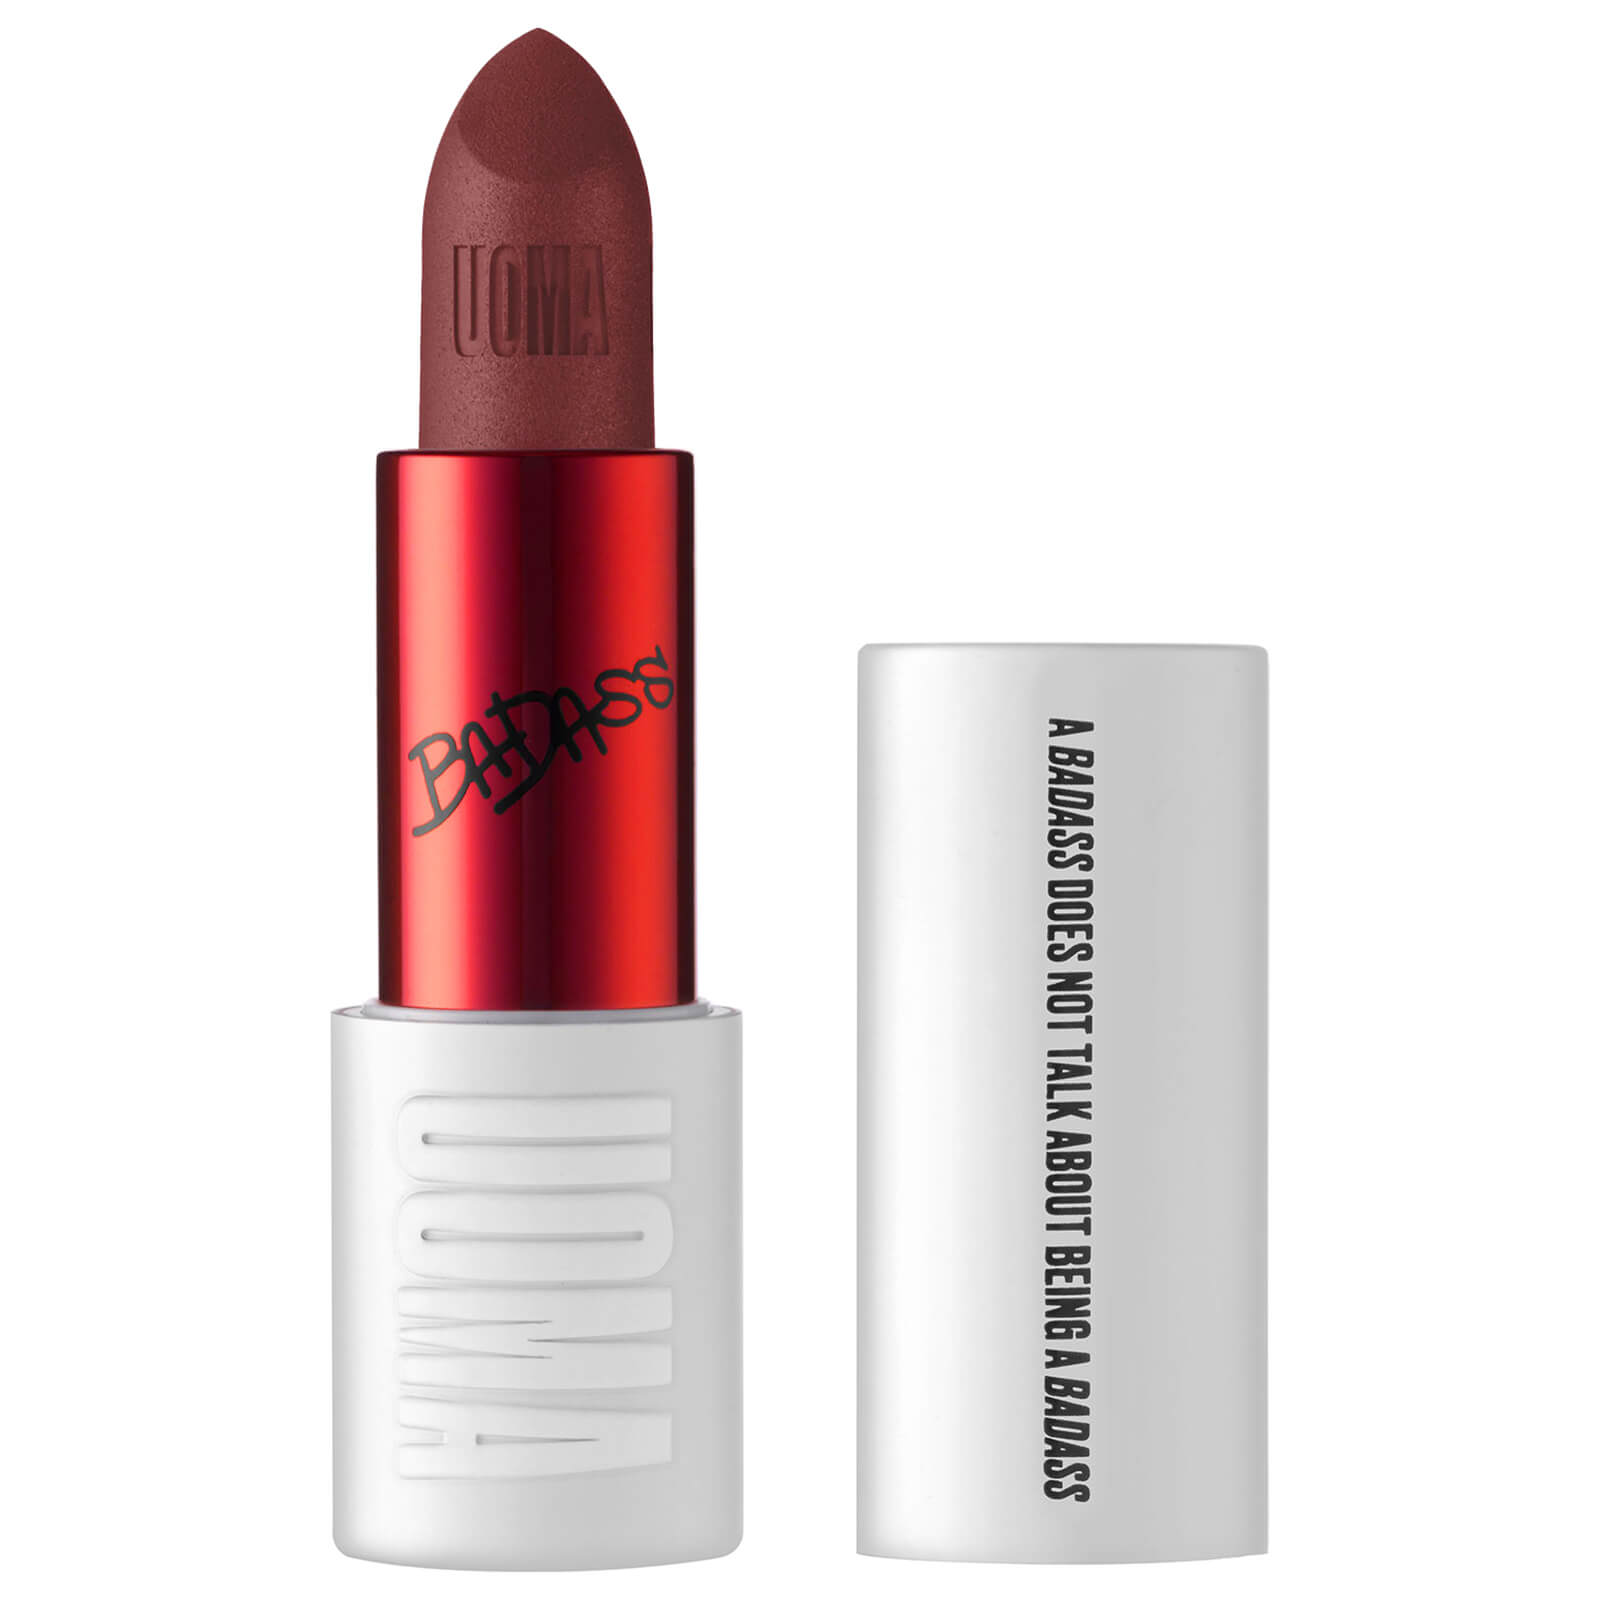 uoma beauty badass icon concentrated matte lipstick 3.5ml (verschiedene farbtÃ¶ne) - winnie